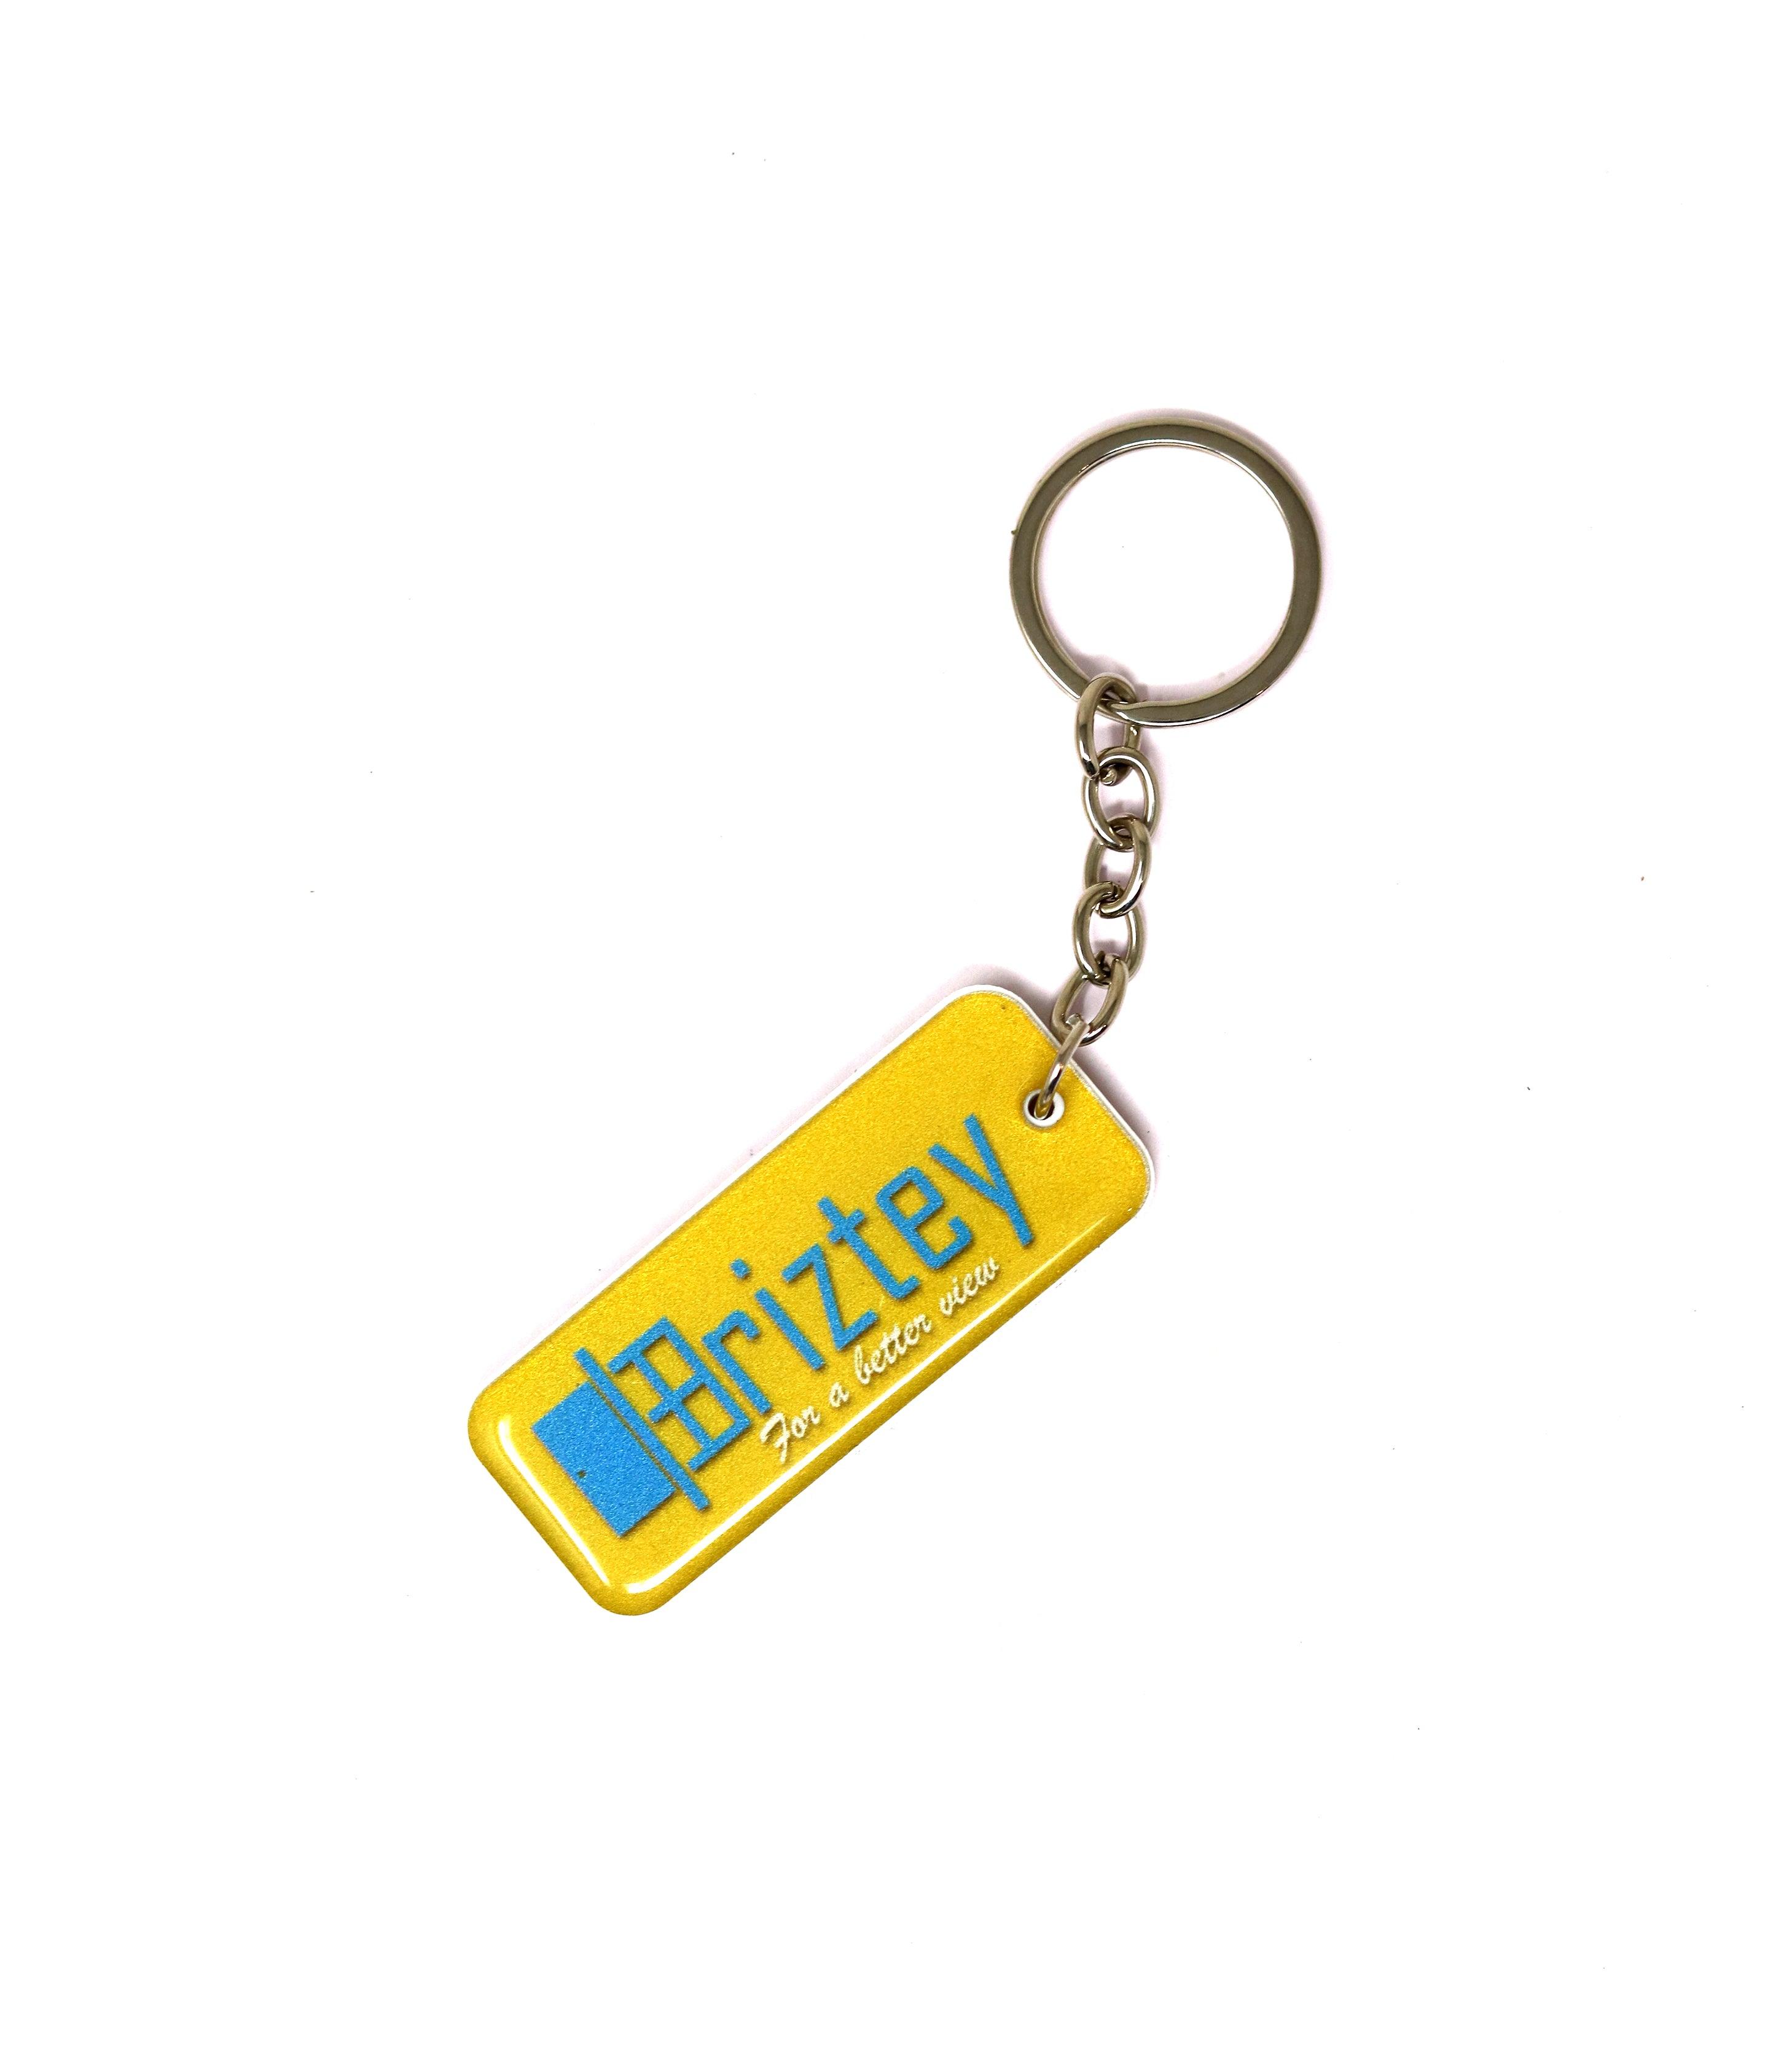 Customized keychain